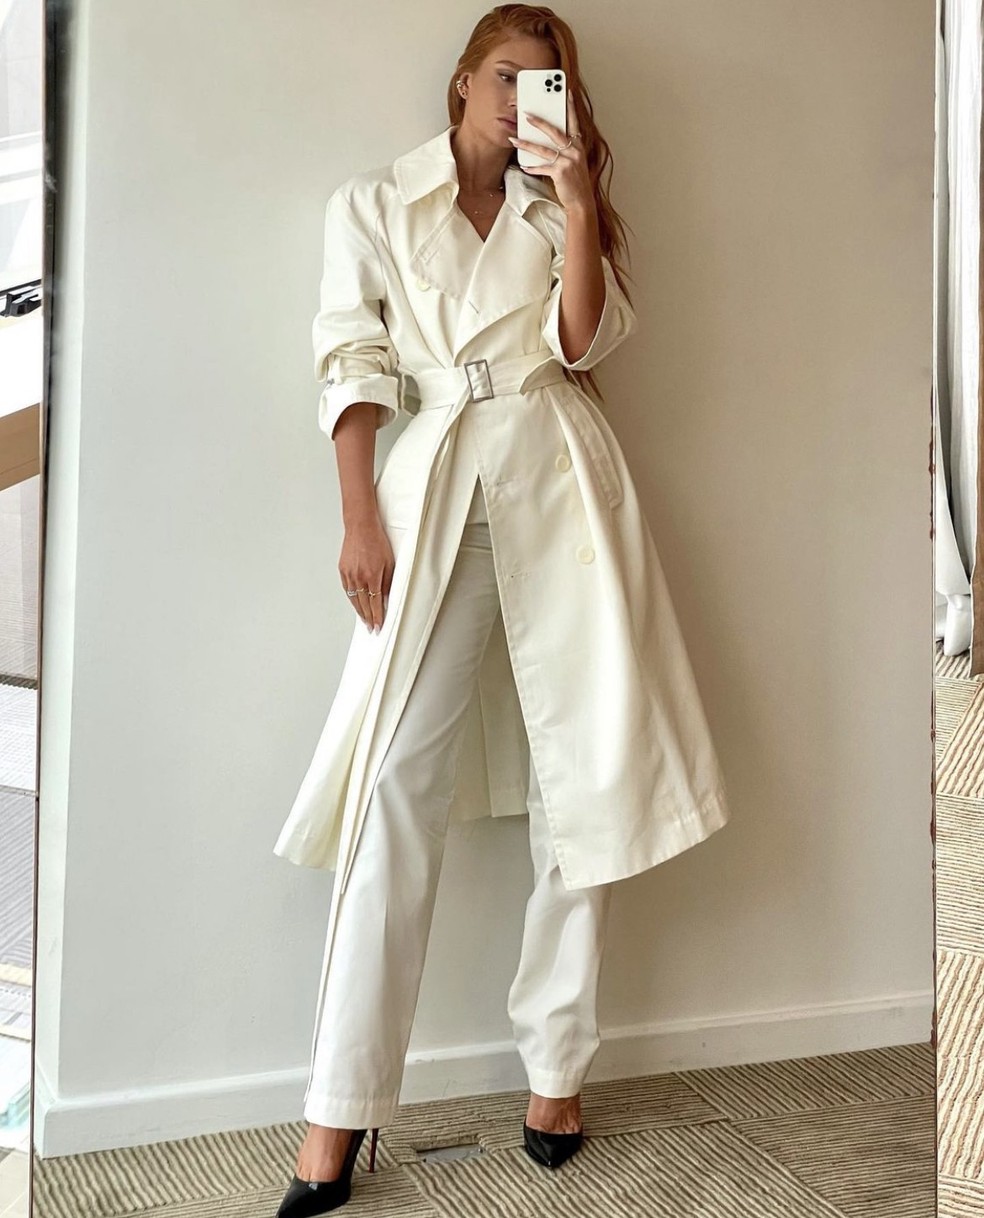 Marina Ruy Barbosa aposta em look monocromático com sobretudo e cinto (Foto: Reprodução/Instagram @marinaruybarbosa) — Foto: Glamour